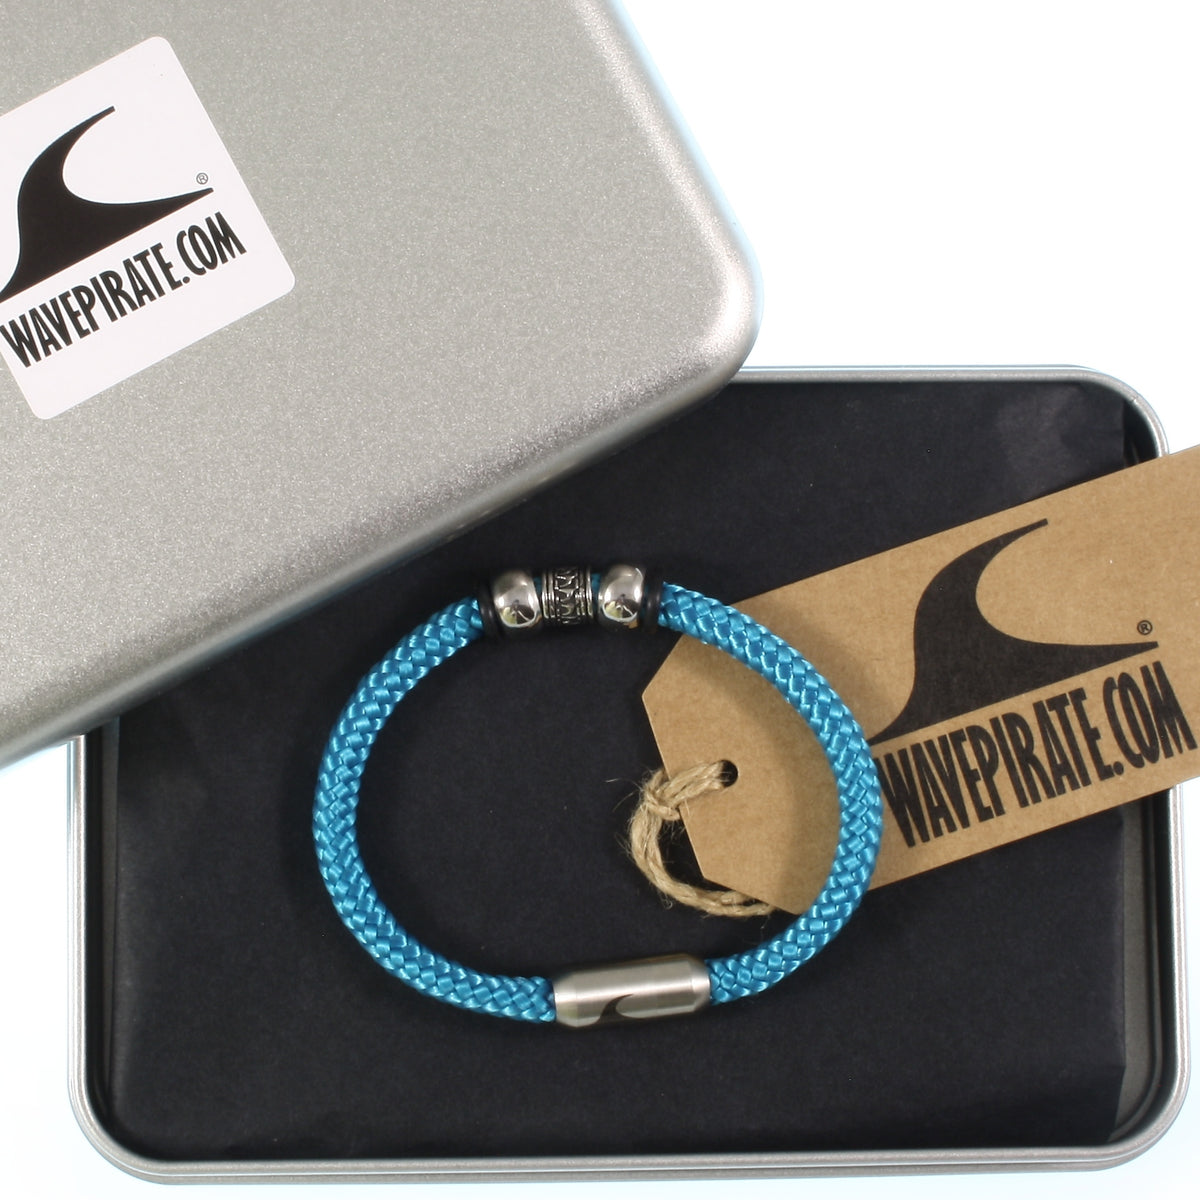 Herren-Segeltau-Armband-atoll-blau-geflochten-Edelstahlverschluss-geschenkverpackung-wavepirate-shop-st